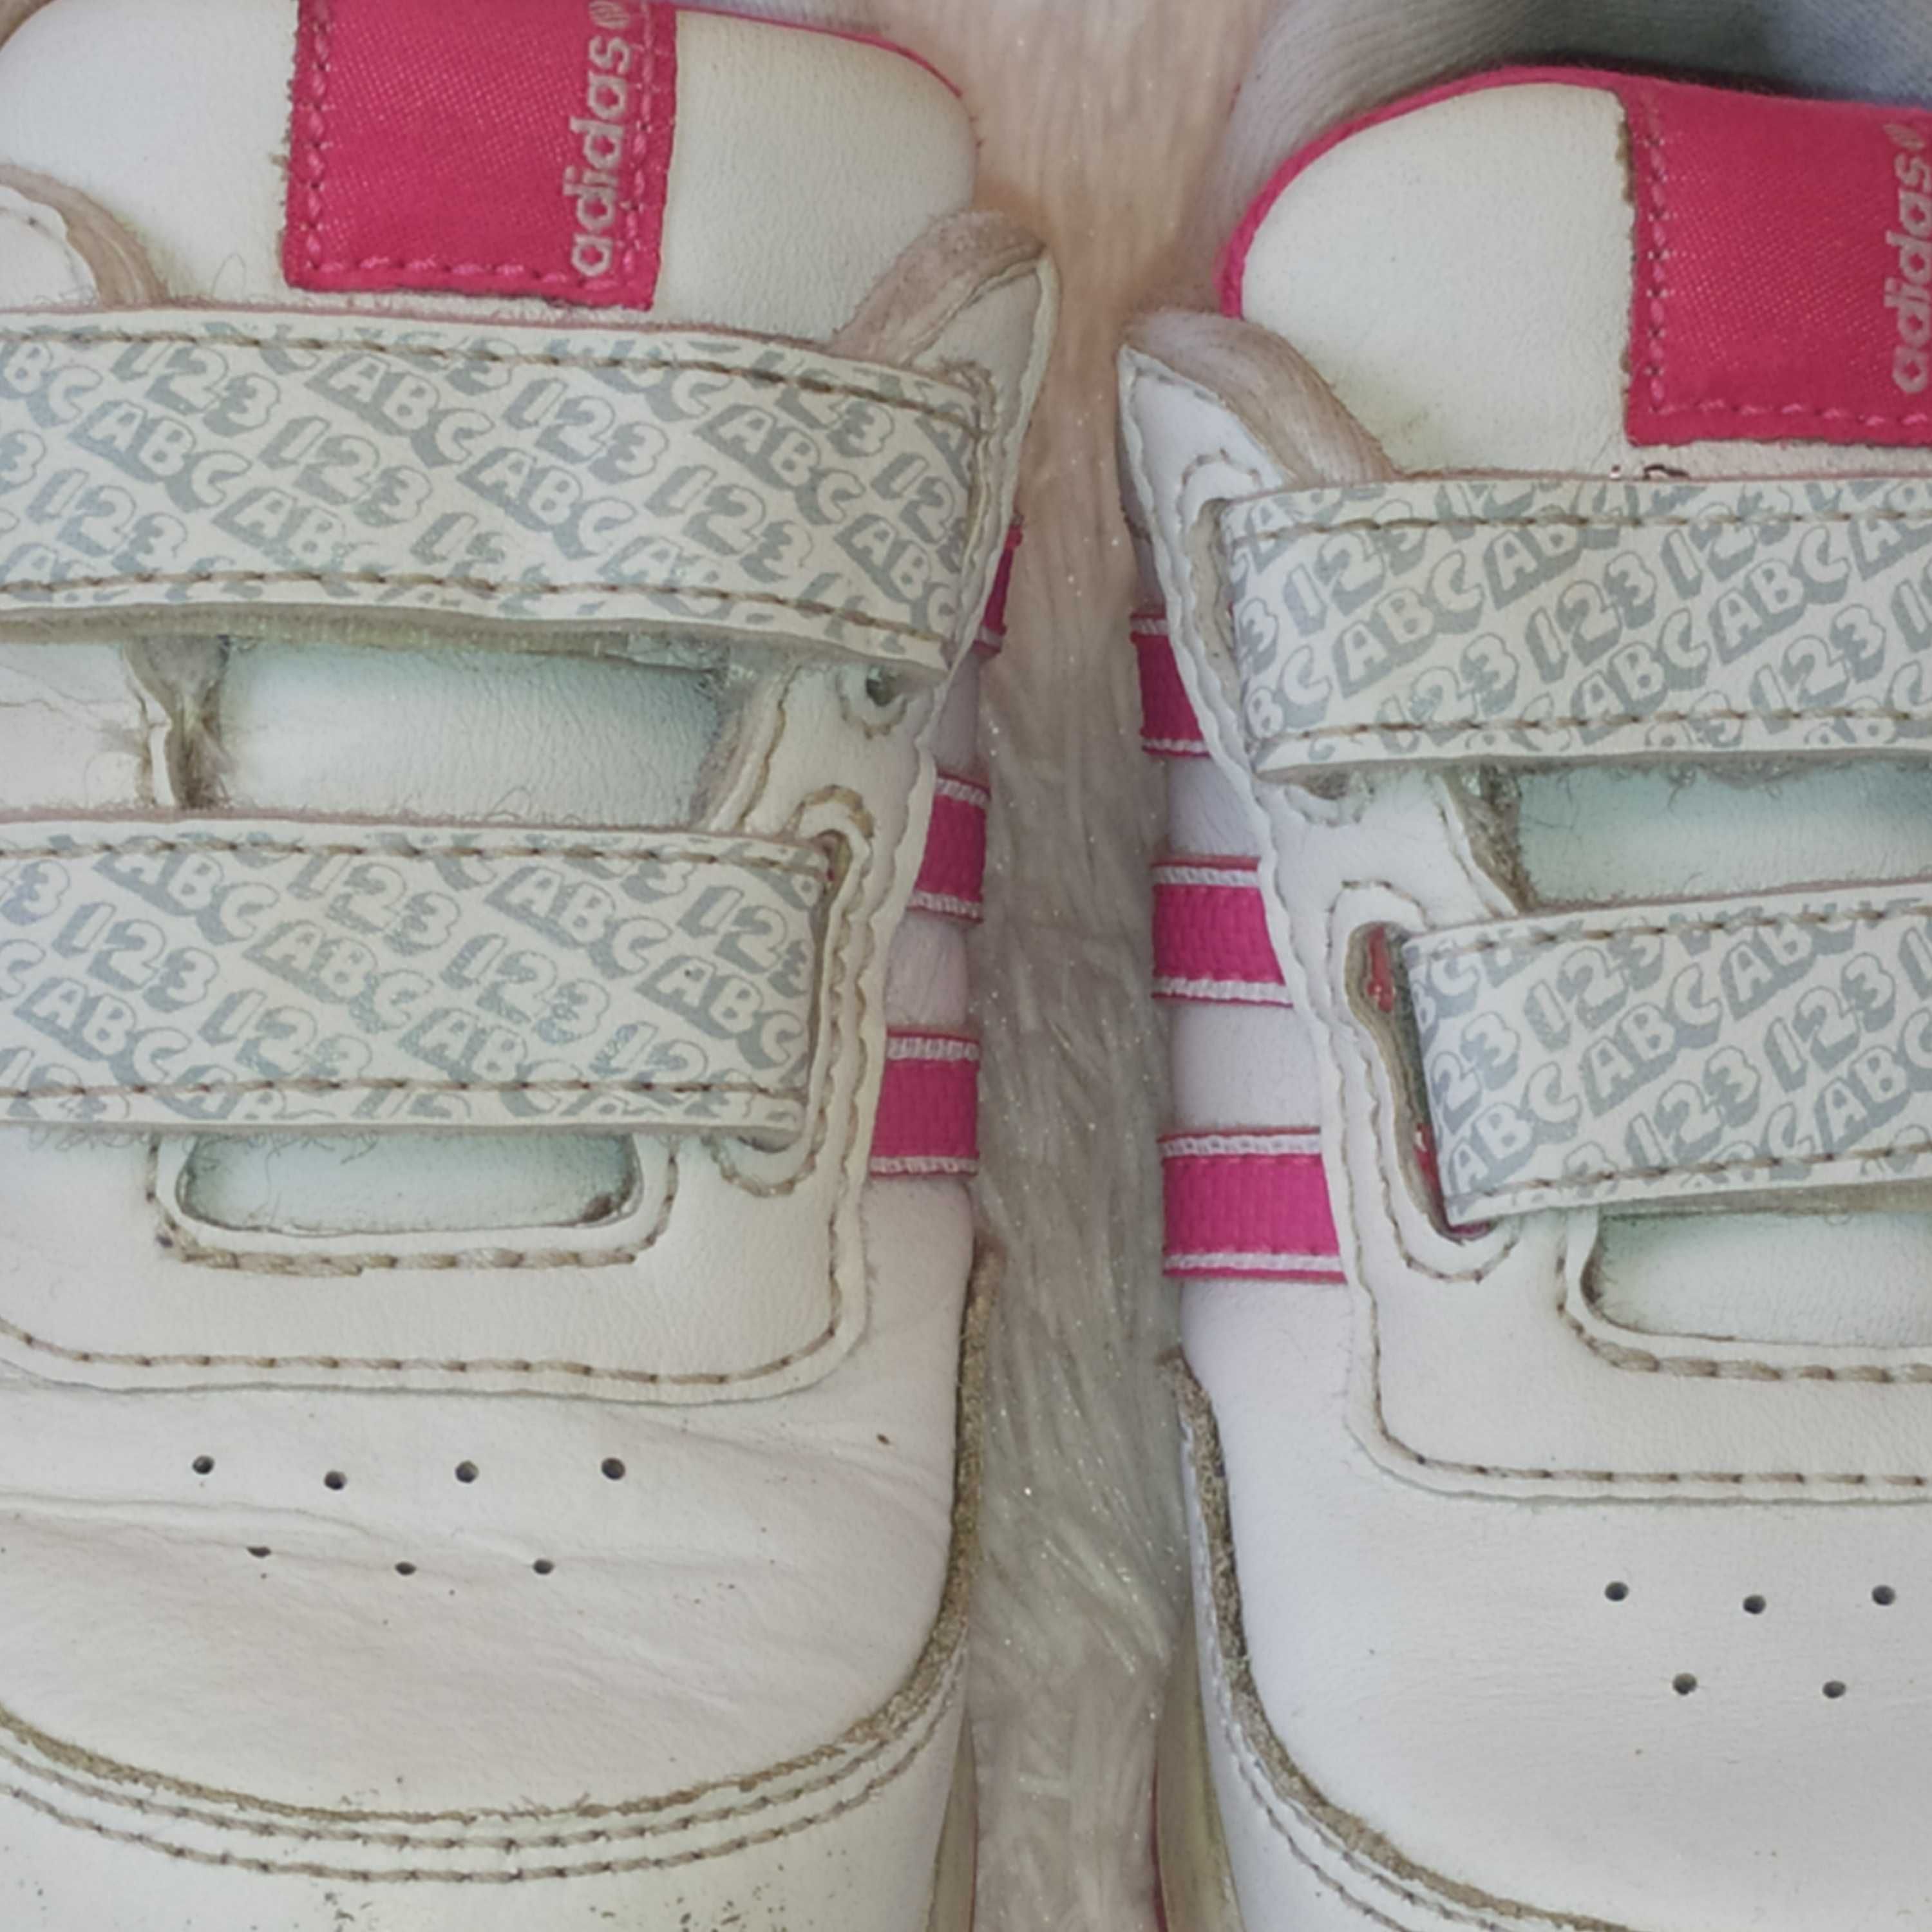 Кроссовки для девочки Adidas. *о675